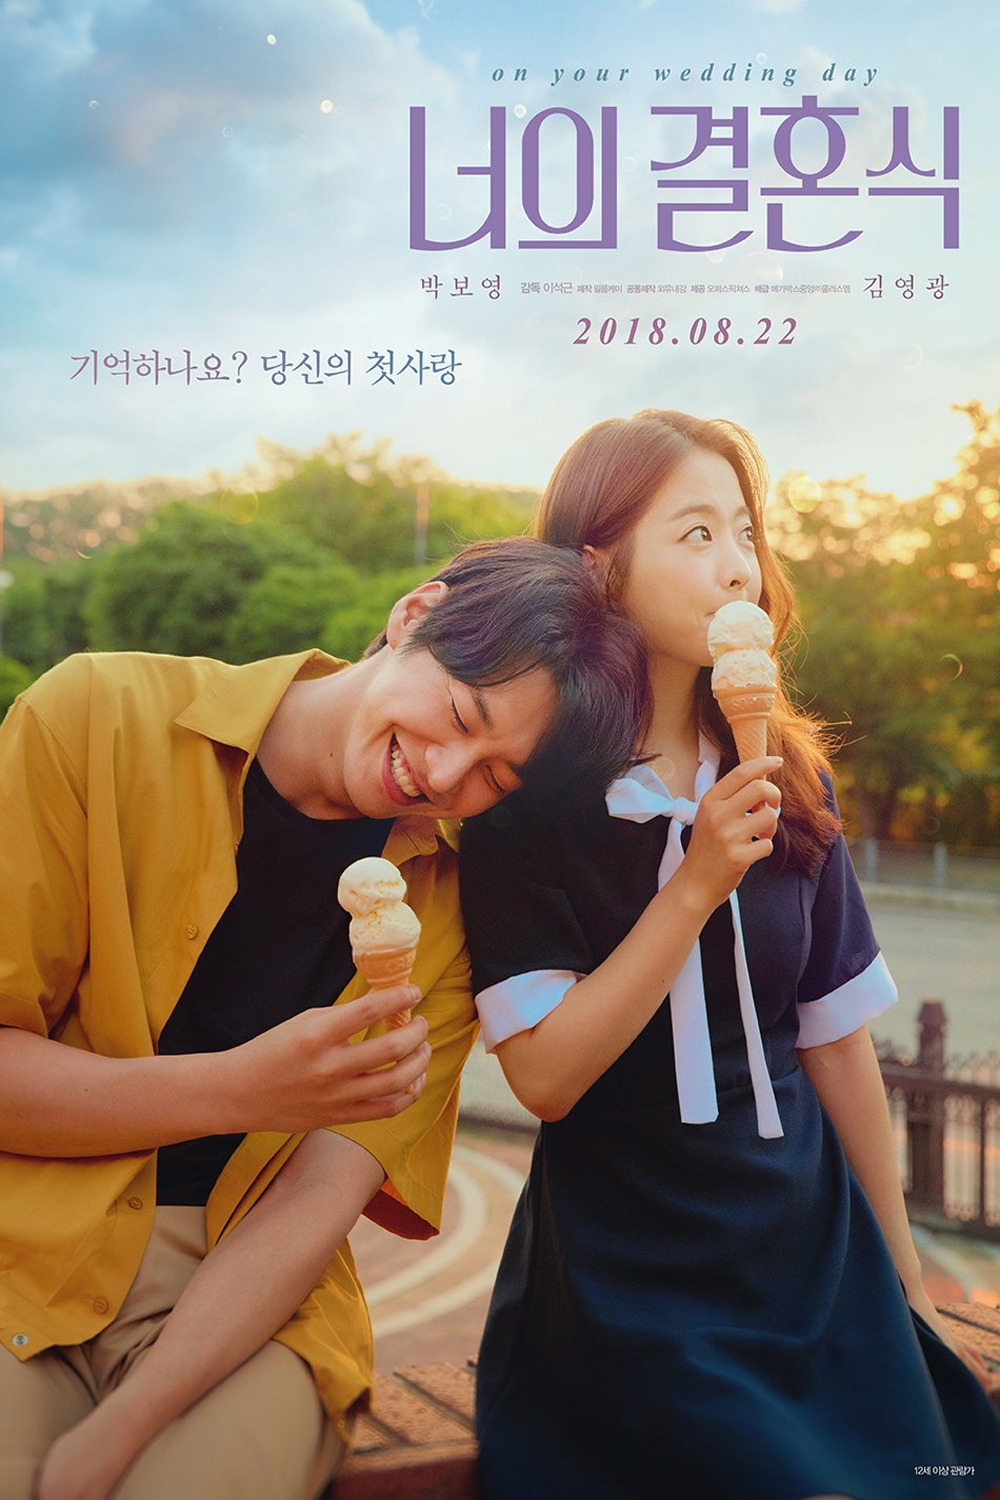 فیلم کره ای در روز عروسی تو 2018 on your wedding day